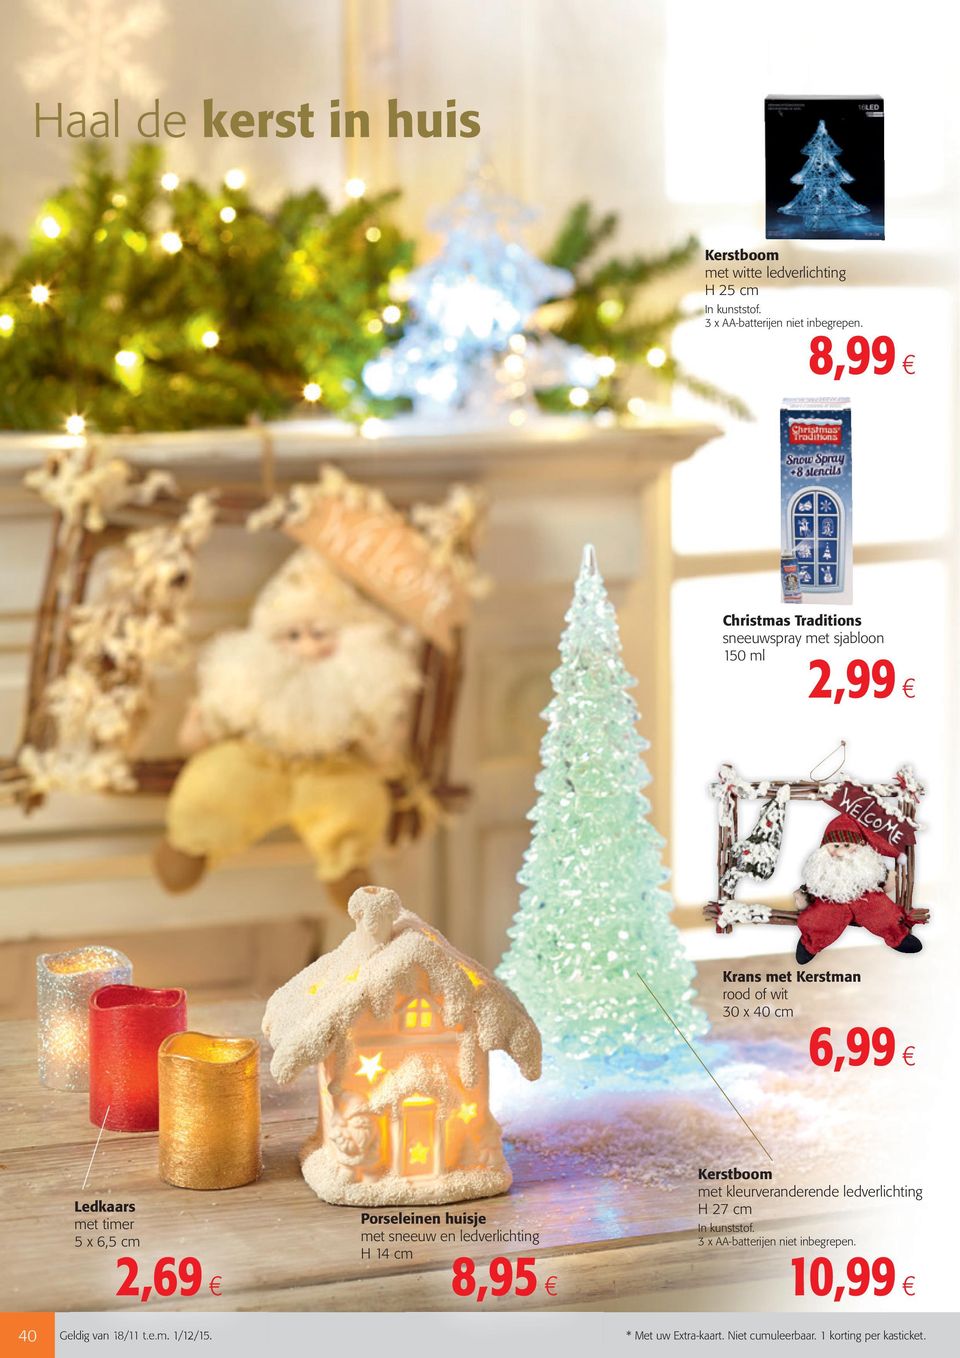 6,5 cm 2,69 Porseleinen huisje met sneeuw en ledverlichting H 14 cm 8,95 Kerstboom met kleurveranderende ledverlichting H 27 cm In